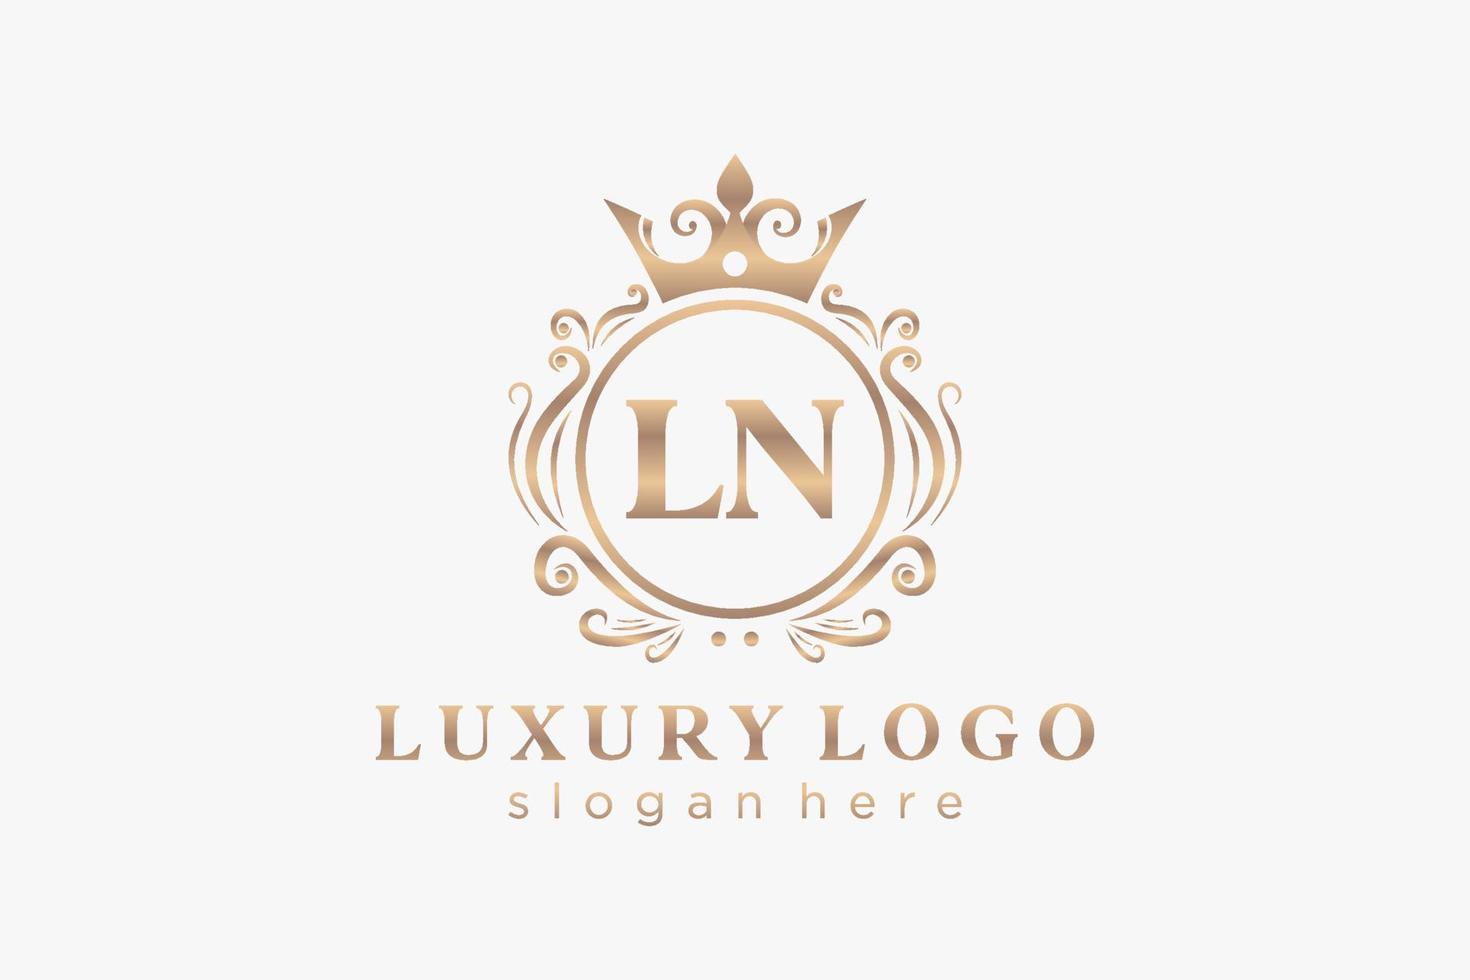 Initial ln Letter Royal Luxury Logo Vorlage in Vektorgrafiken für Restaurant, Lizenzgebühren, Boutique, Café, Hotel, heraldisch, Schmuck, Mode und andere Vektorillustrationen. vektor